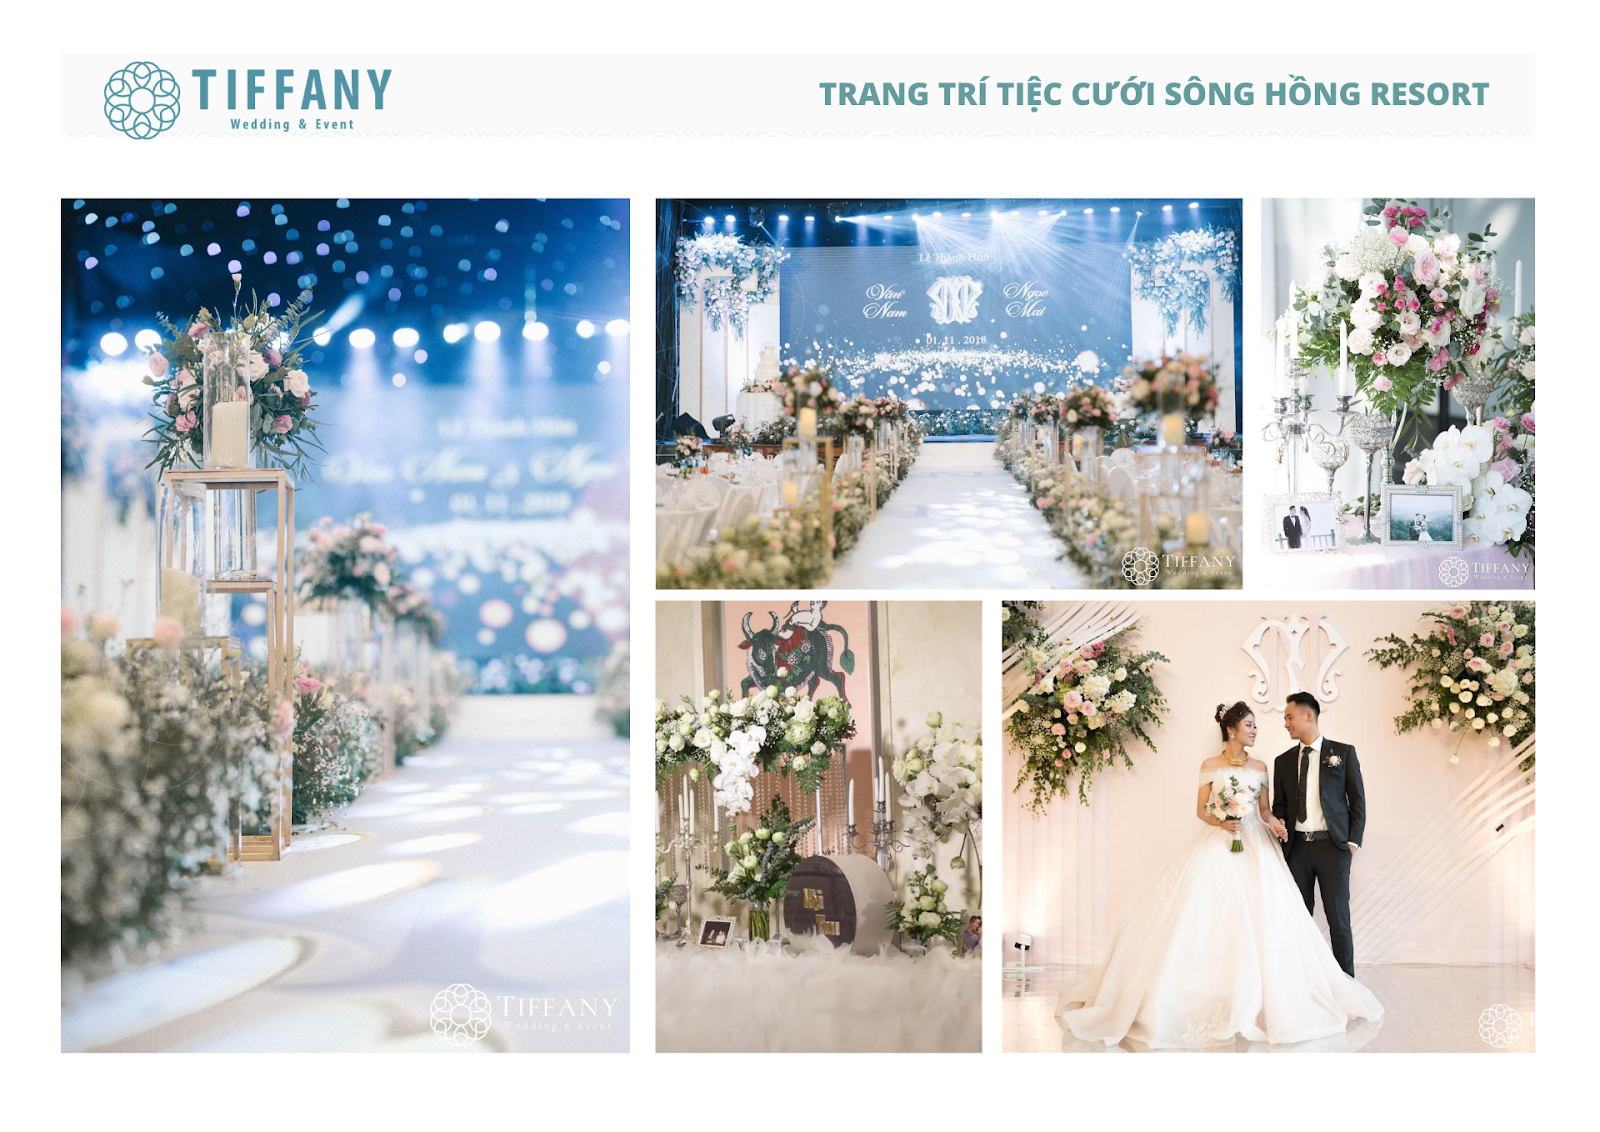 Tiffany - Thương hiệu tổ chức và trang trí tiệc cưới – sự kiện cao cấp HÀNG ĐẦU tại Việt Nam